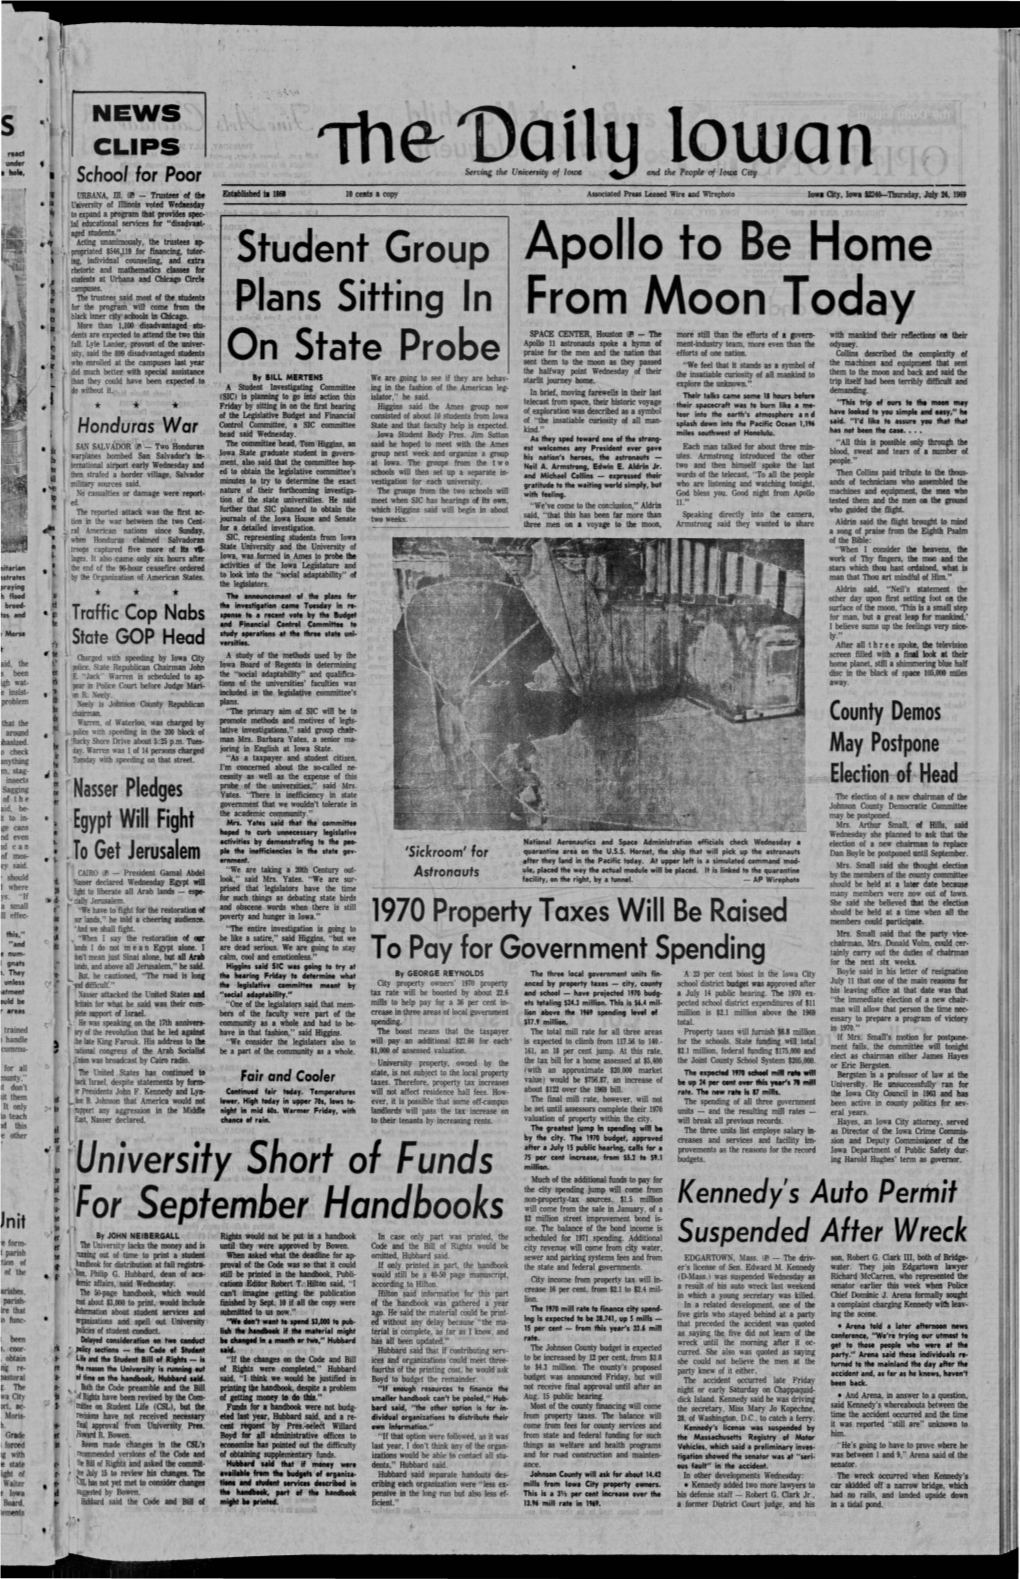 Daily Iowan (Iowa City, Iowa), 1969-07-24